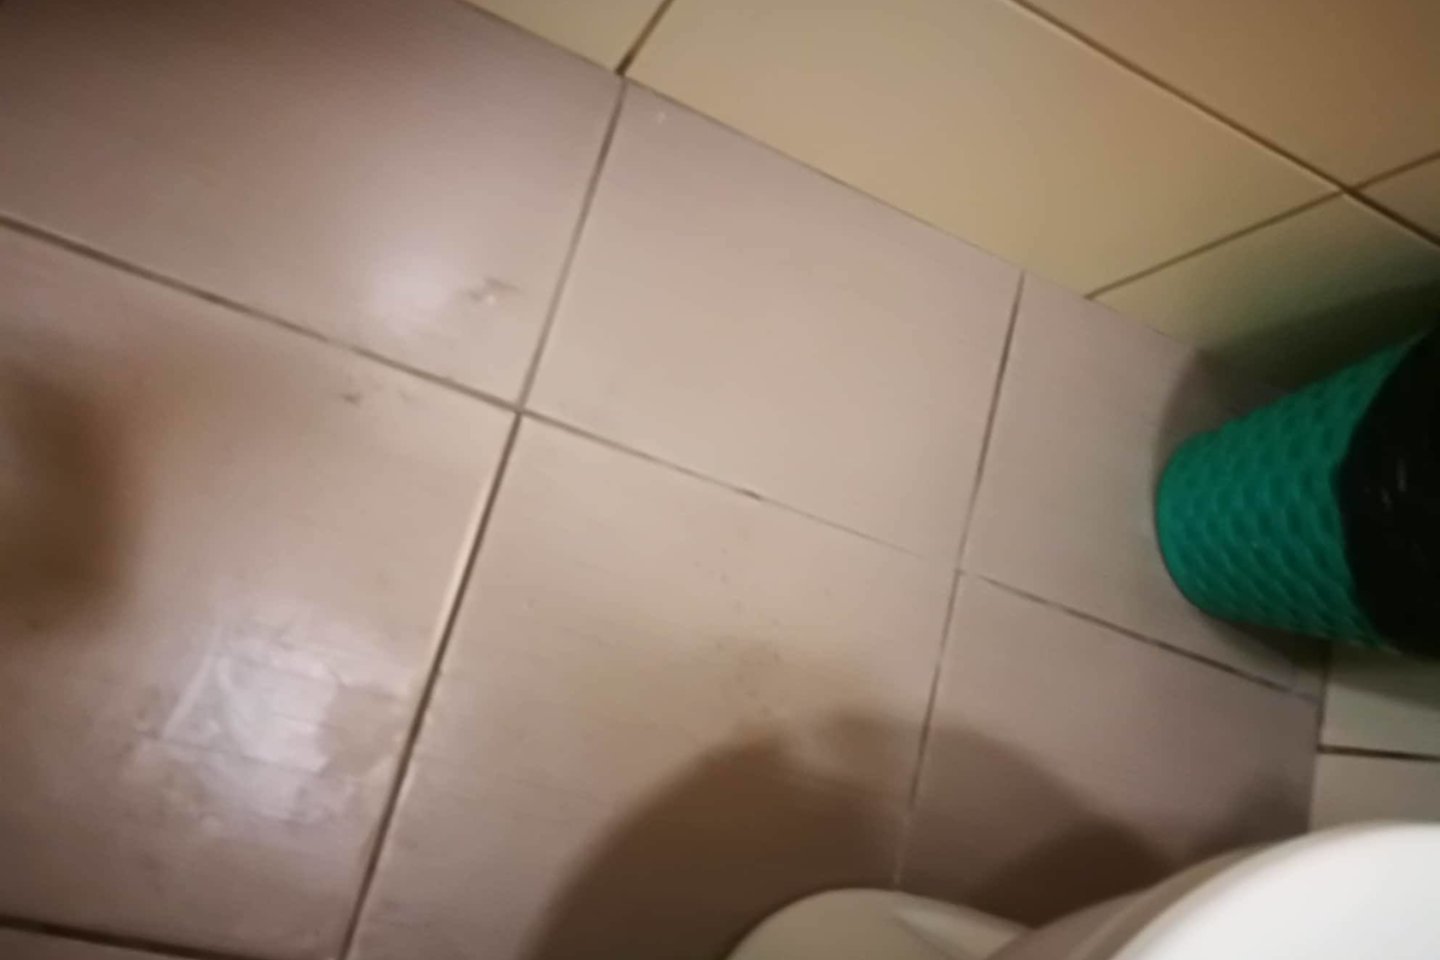  Prieš tualetą esanti patalpa su kriaukle buvo dar pakenčiamos būklės, bet paties tualeto grindys buvo nutaškytos balomis. Skysčio prigimtis tikriausiai niekam klausimų nekelia.<br> Aurelijos B. nuotr. 